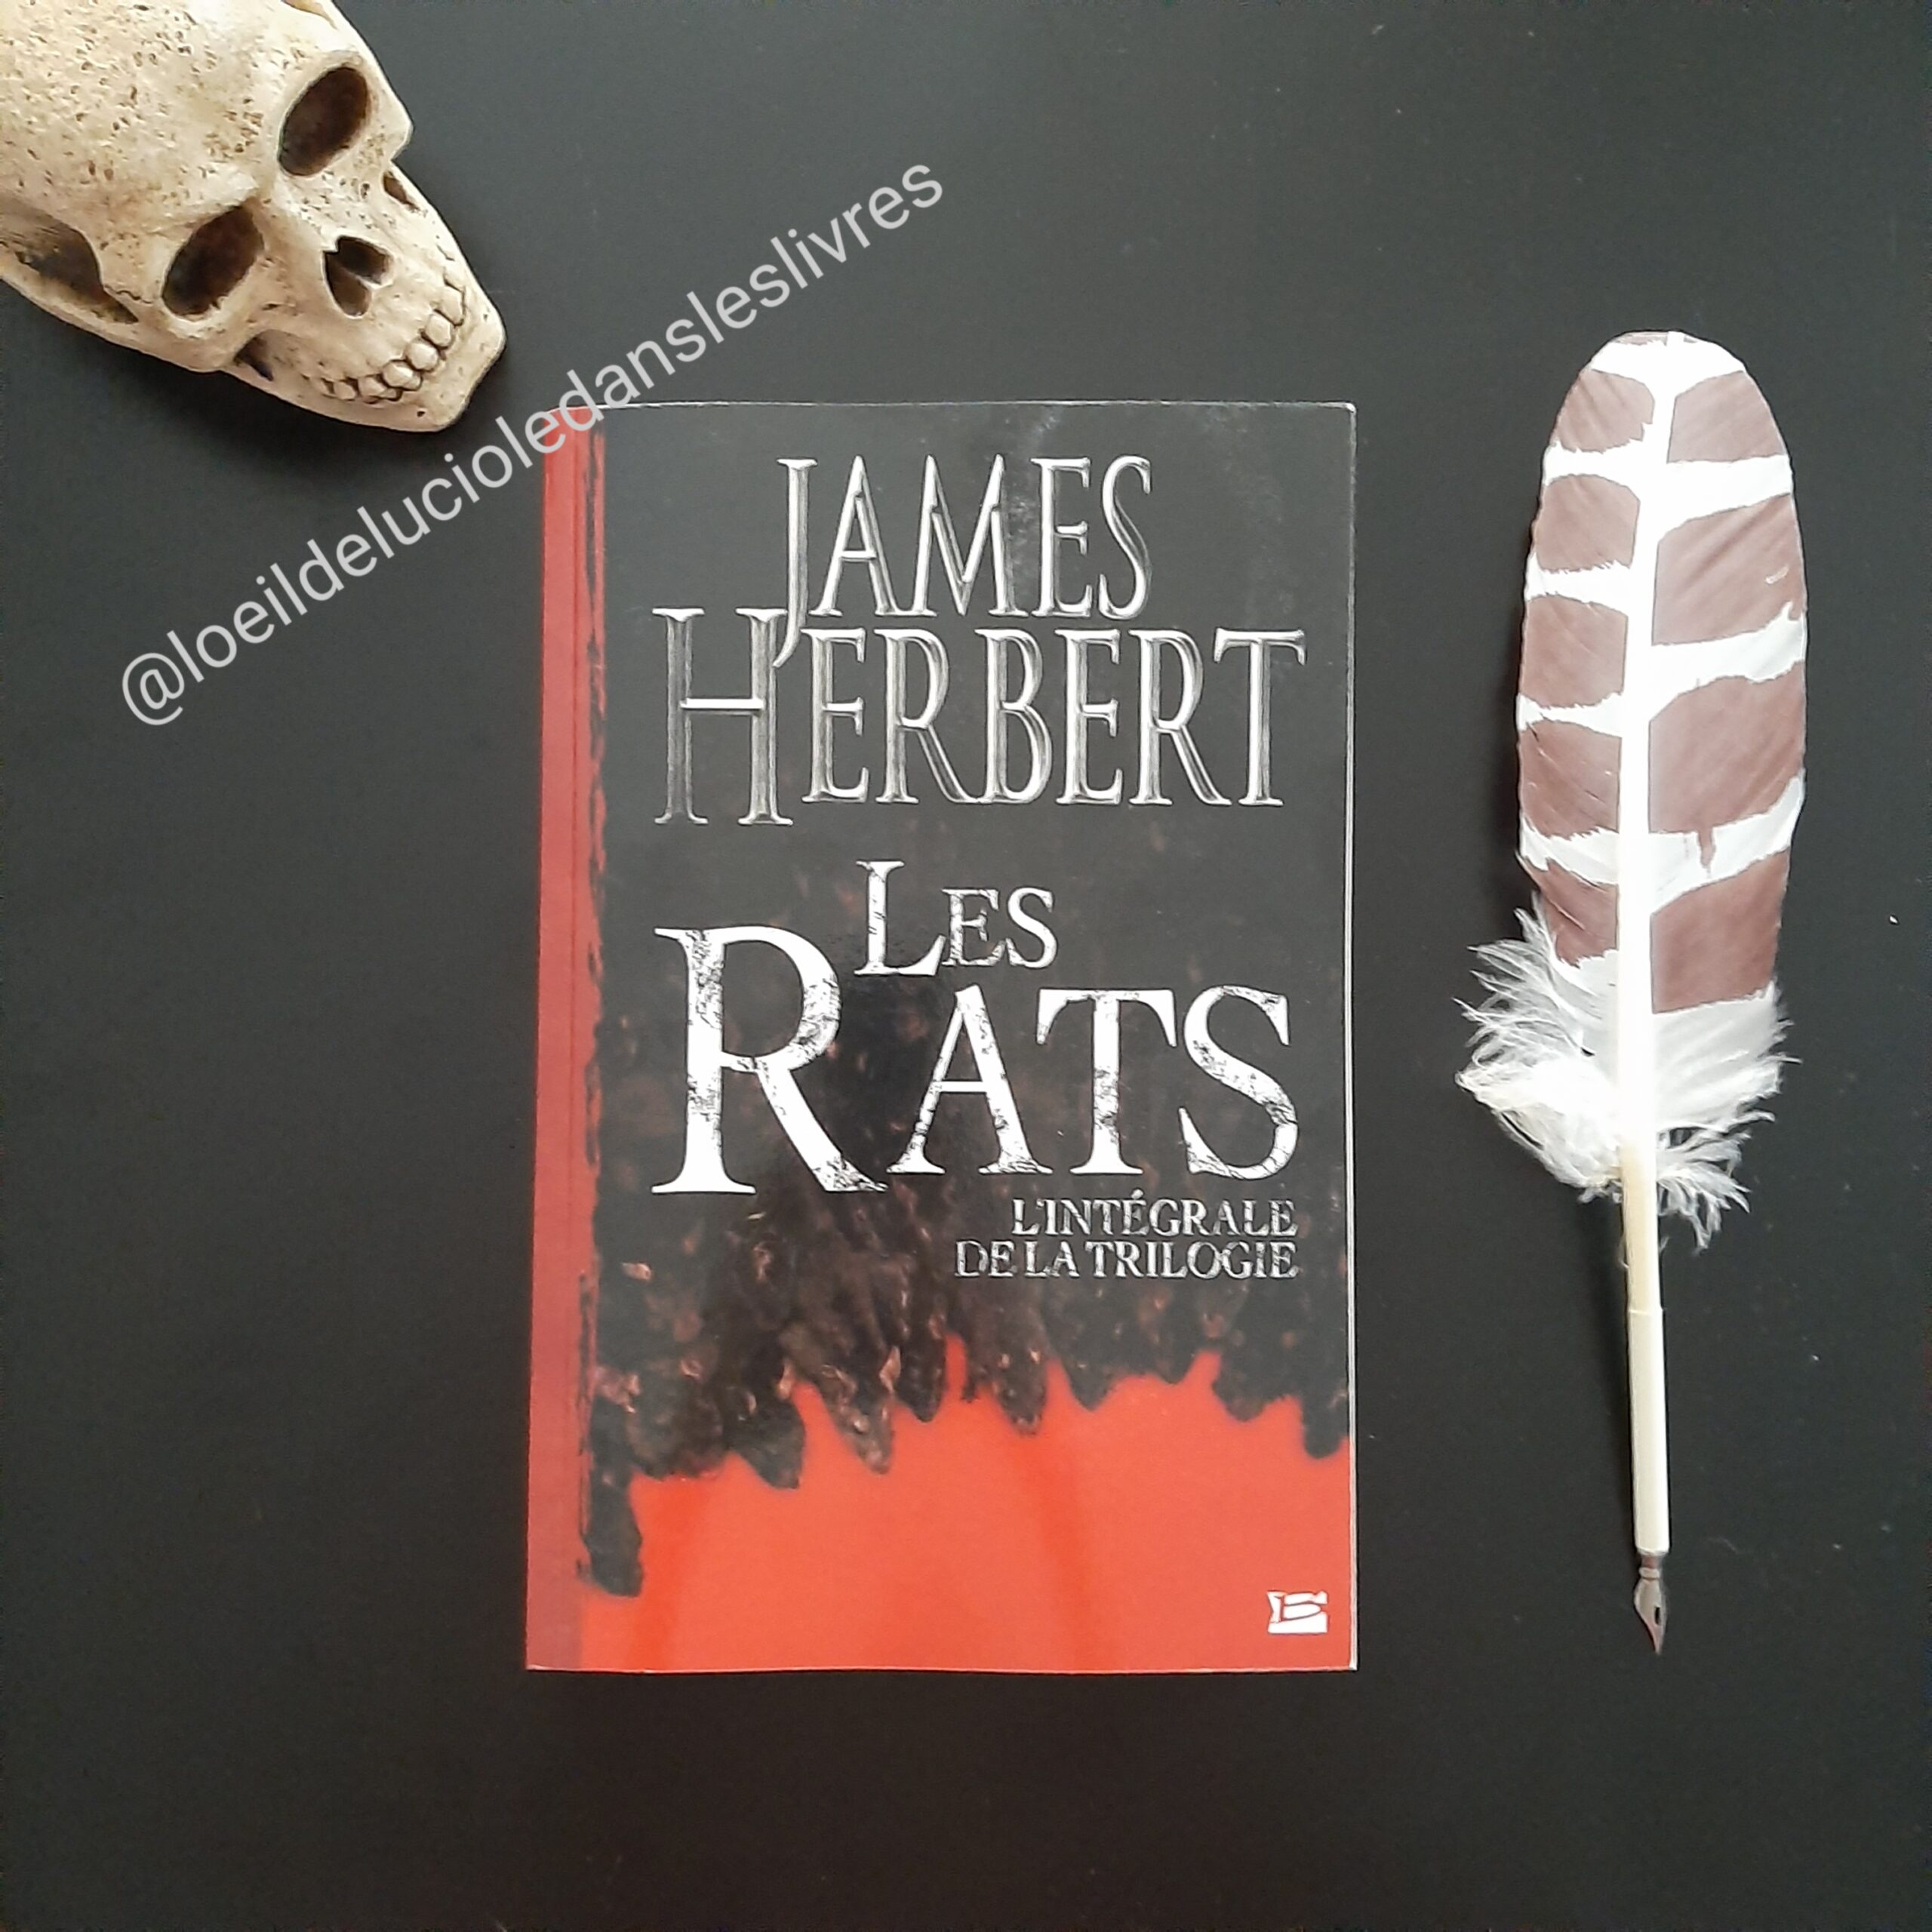 Les Rats, la trilogie de James Herbert